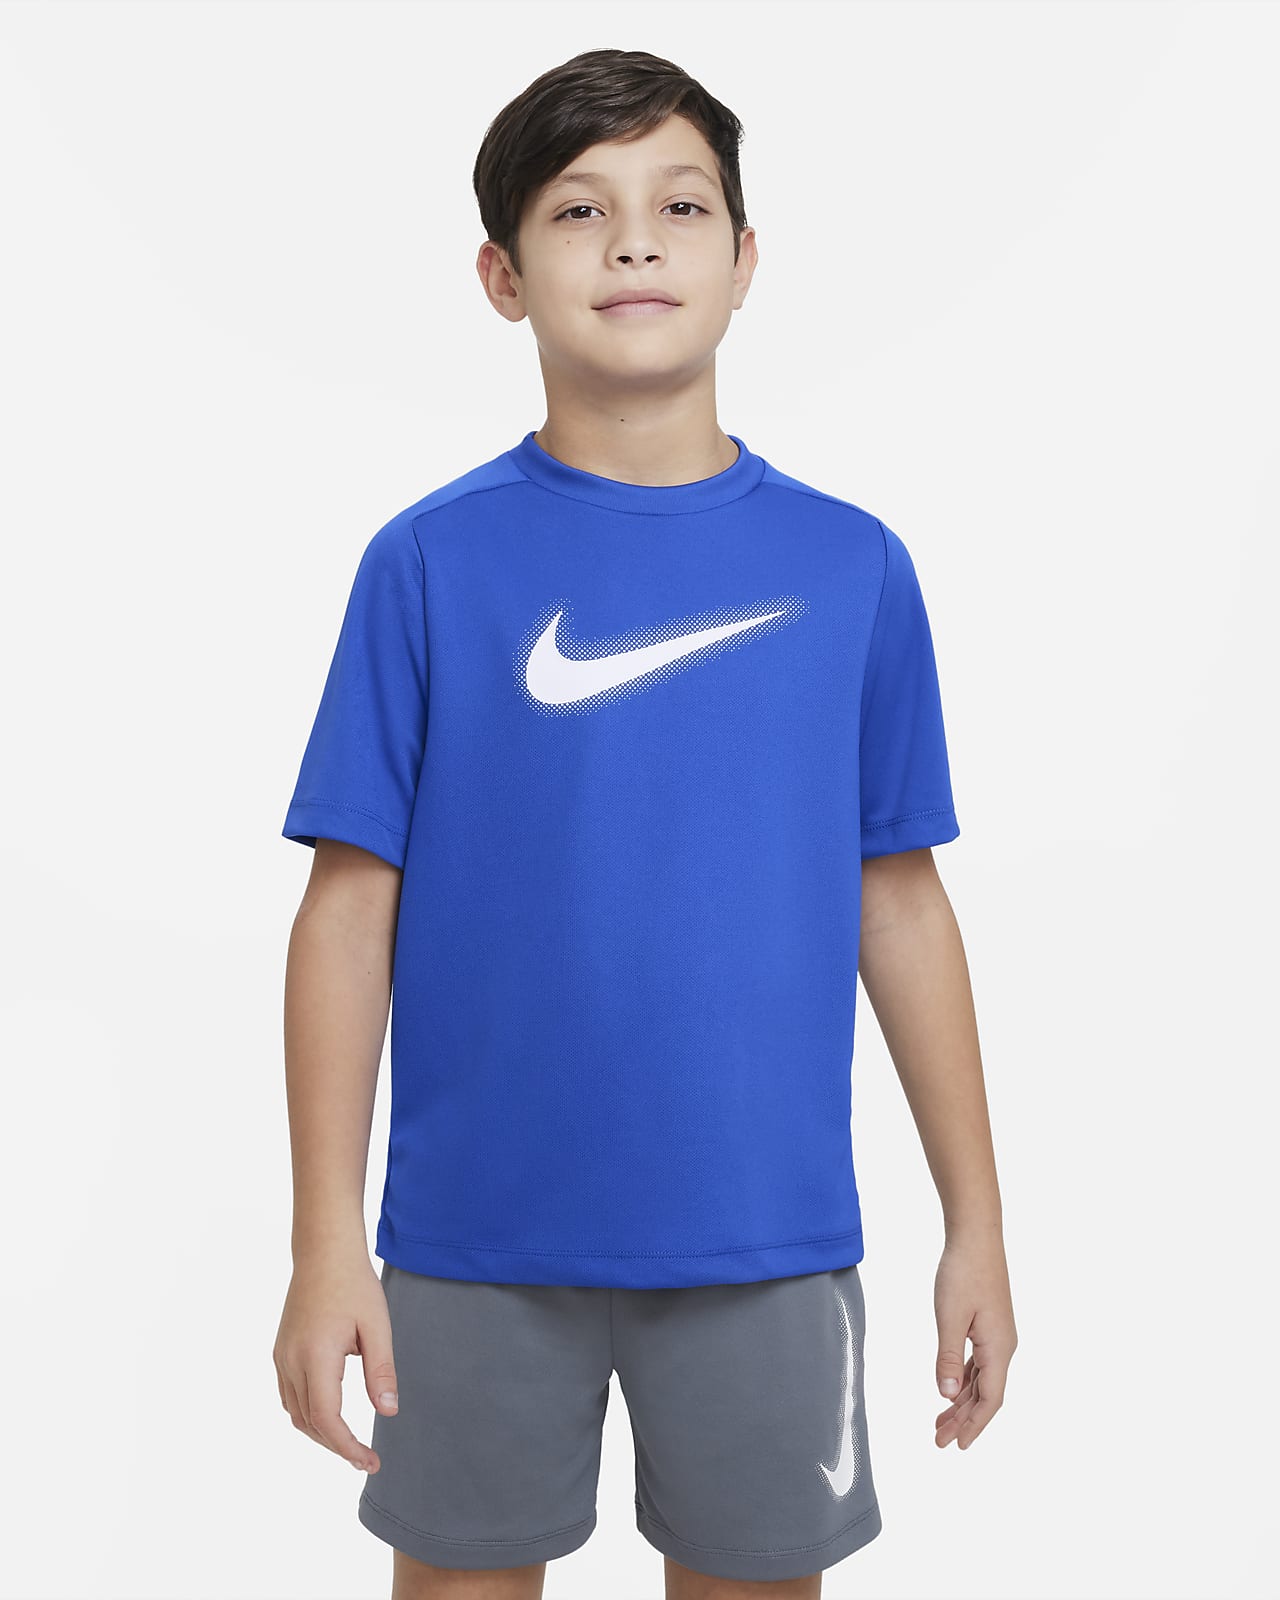 Camisola de treino com grafismo Dri-FIT Nike Multi Júnior (Rapaz)